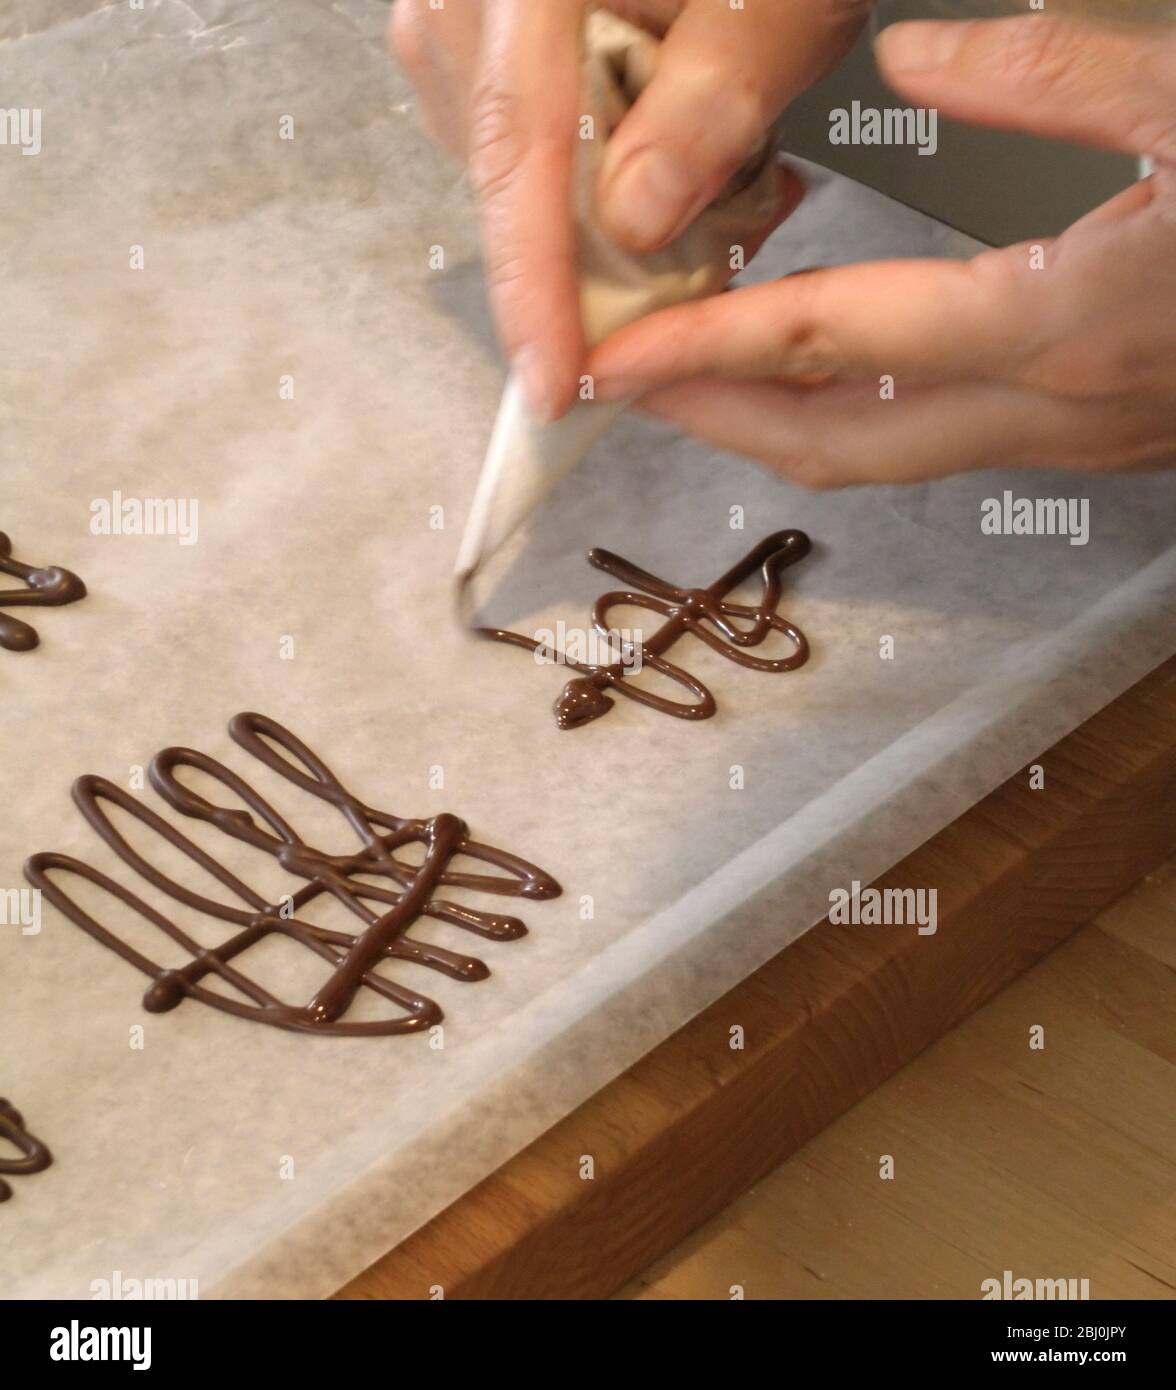 Fabrication de tartides au chocolat pour la décoration de gâteaux - Banque D'Images